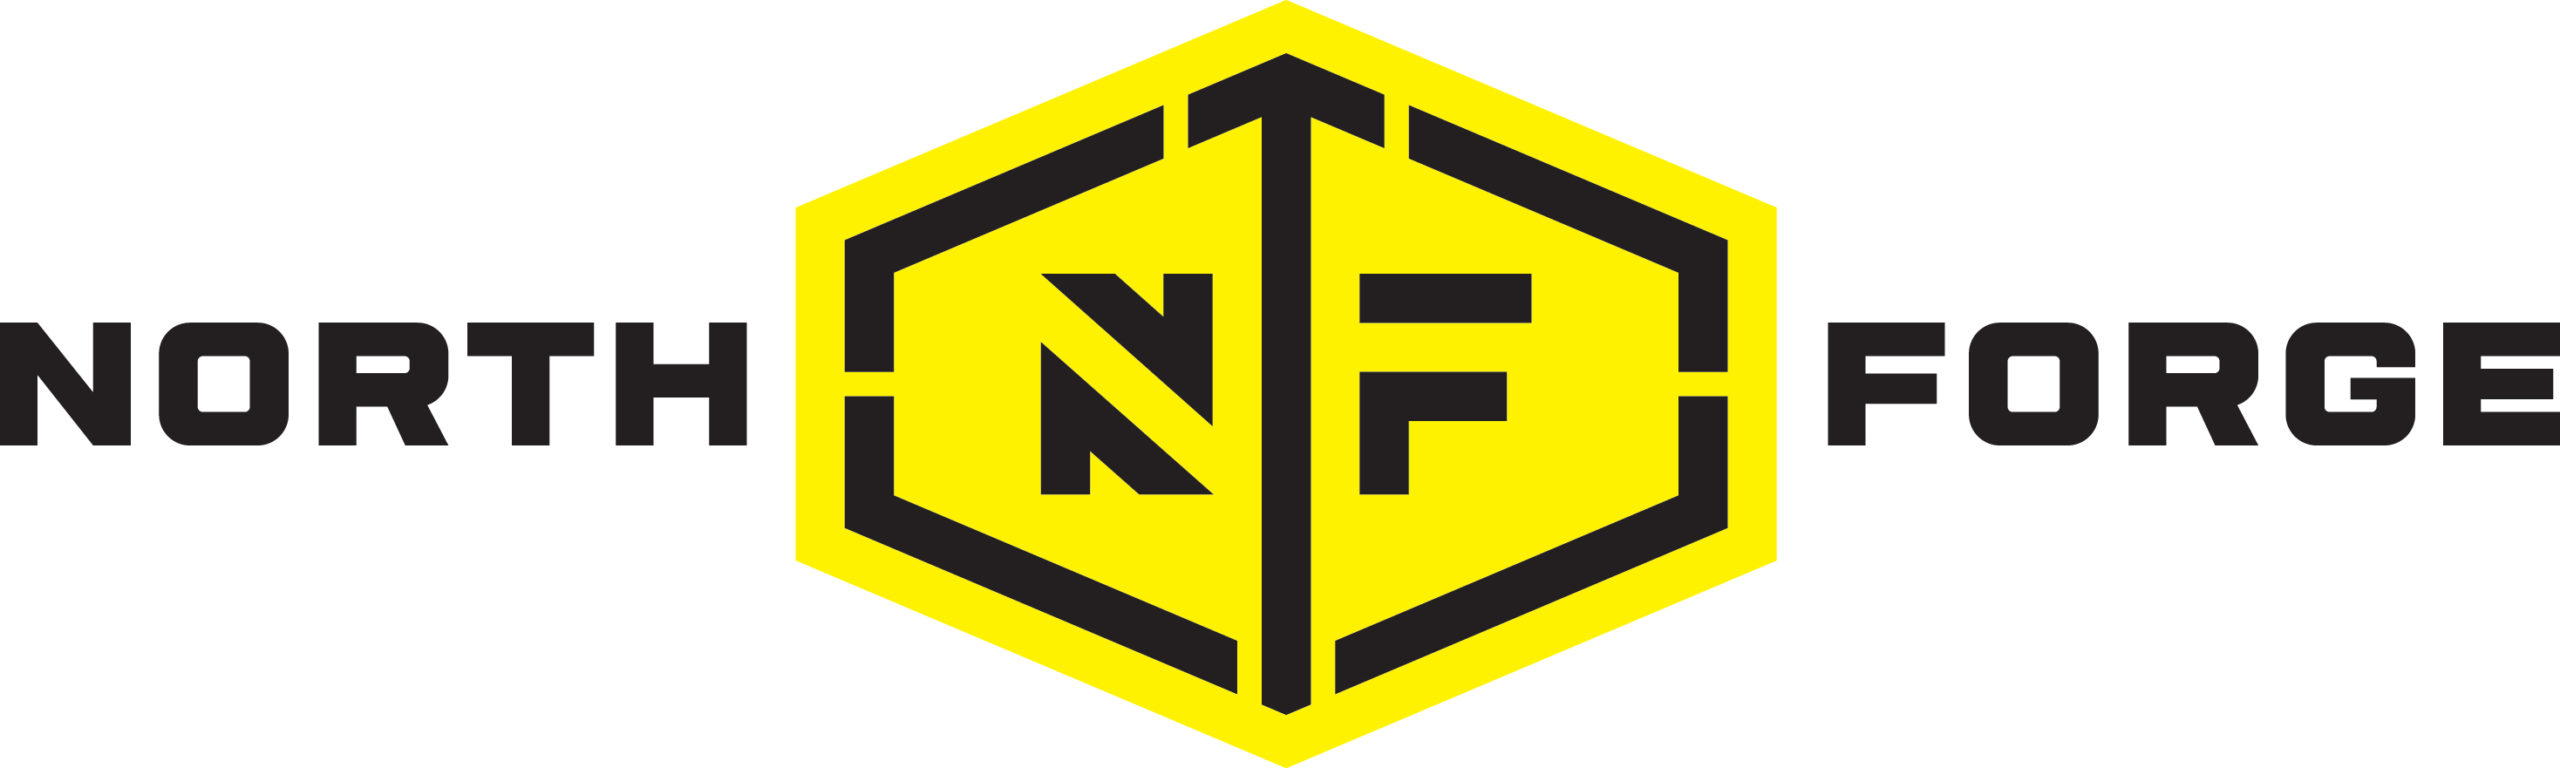 NorthForge-Horiz-4c-RGB